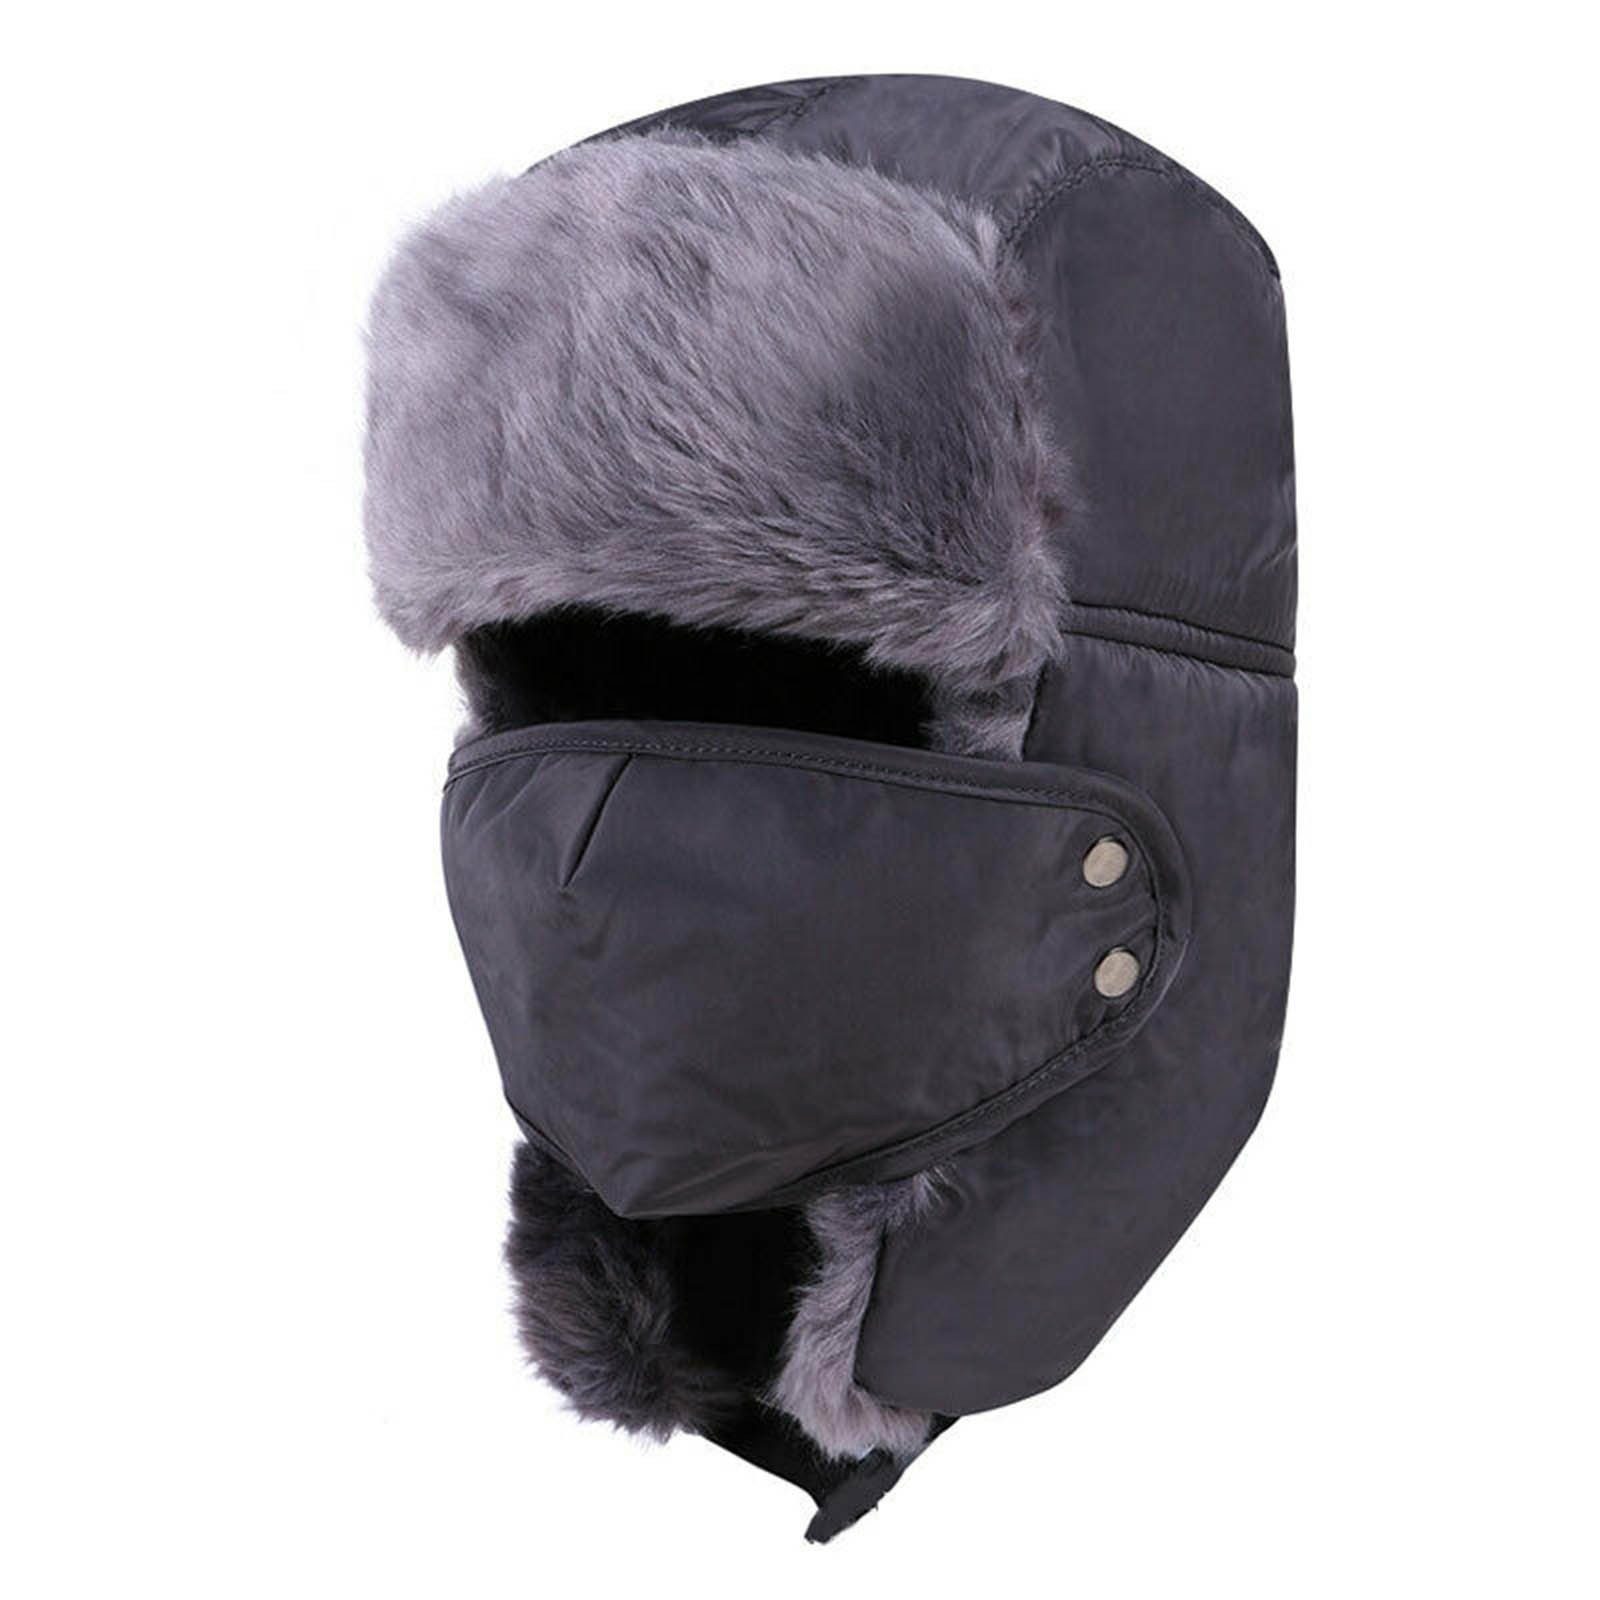 Blusmart Fleecemütze Winter Plüsch Hüte Kälte-Proof Ohr Warme Kappe Outdoor Winddicht grau | Fleecemützen